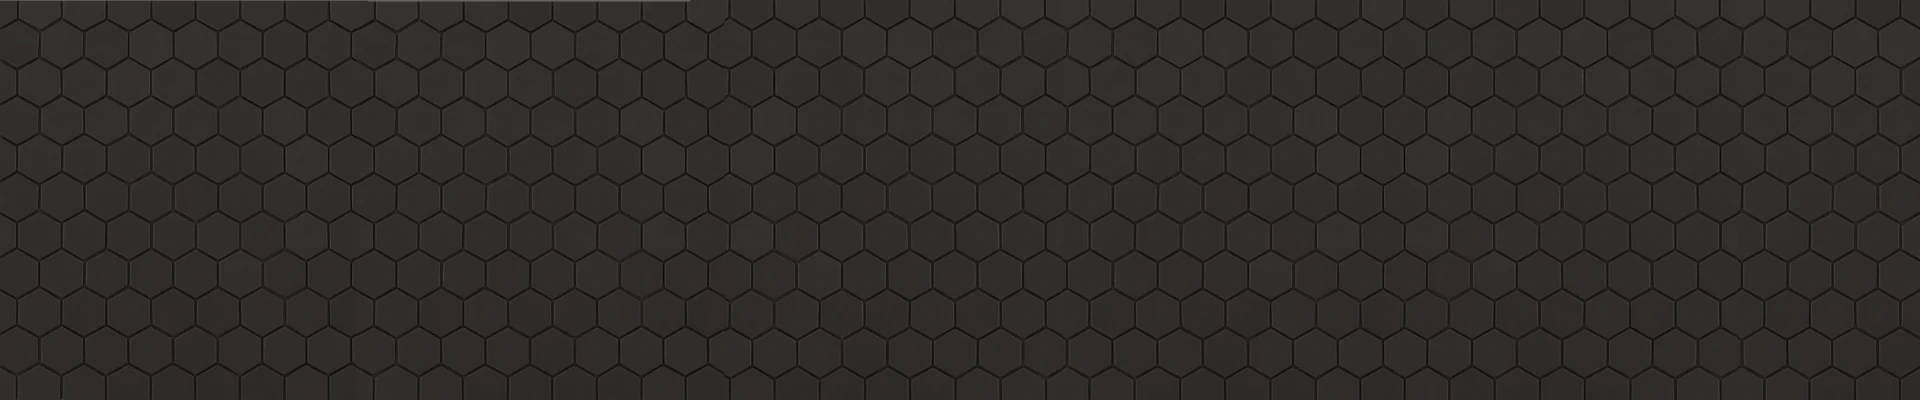 gresite hexagonal para piscina negro